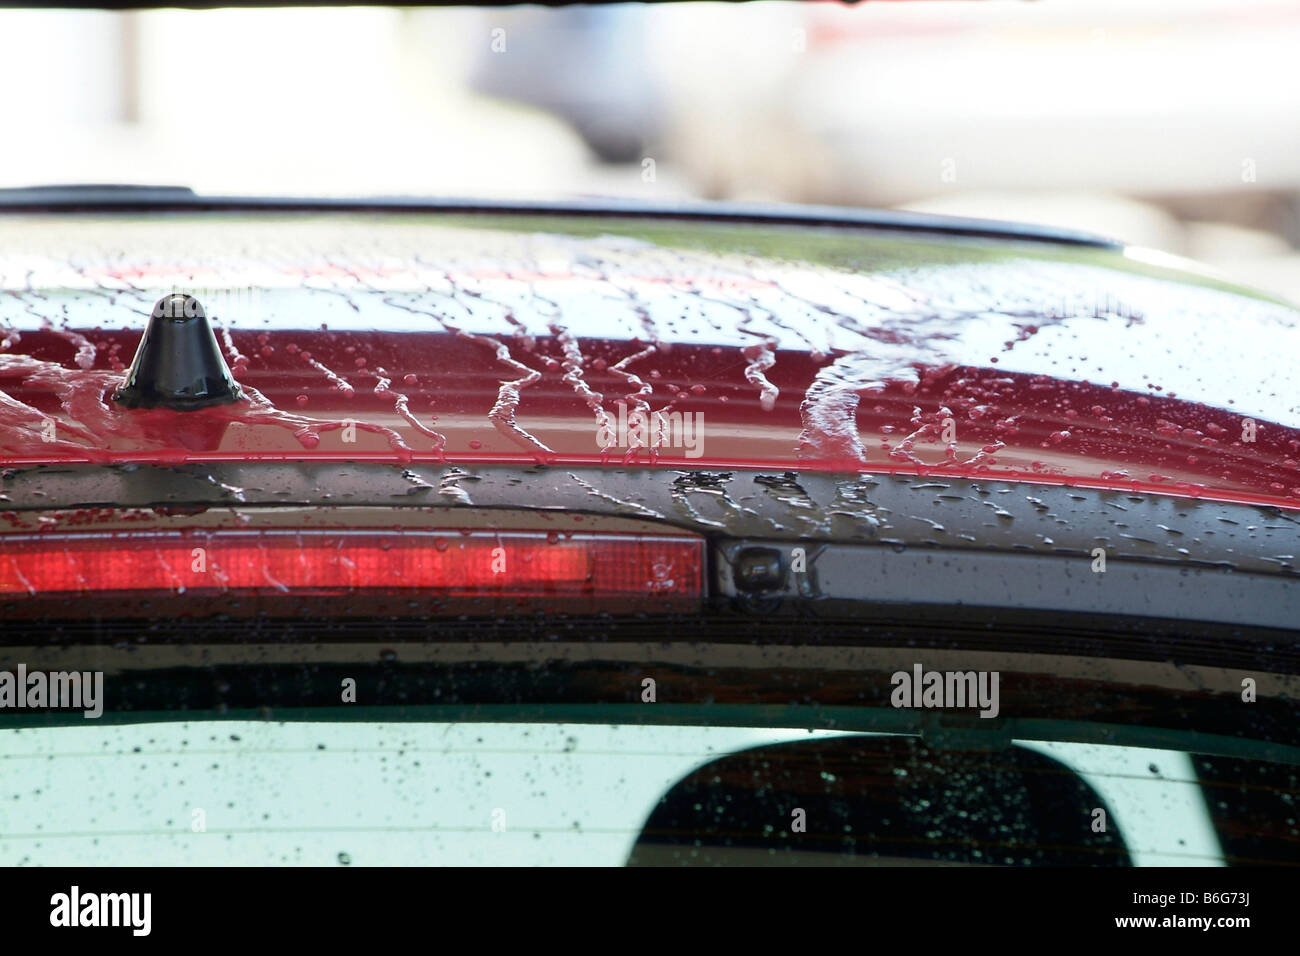 Détail de l'eau perler sur la carrosserie d'un véhicule dans un lave-auto Banque D'Images